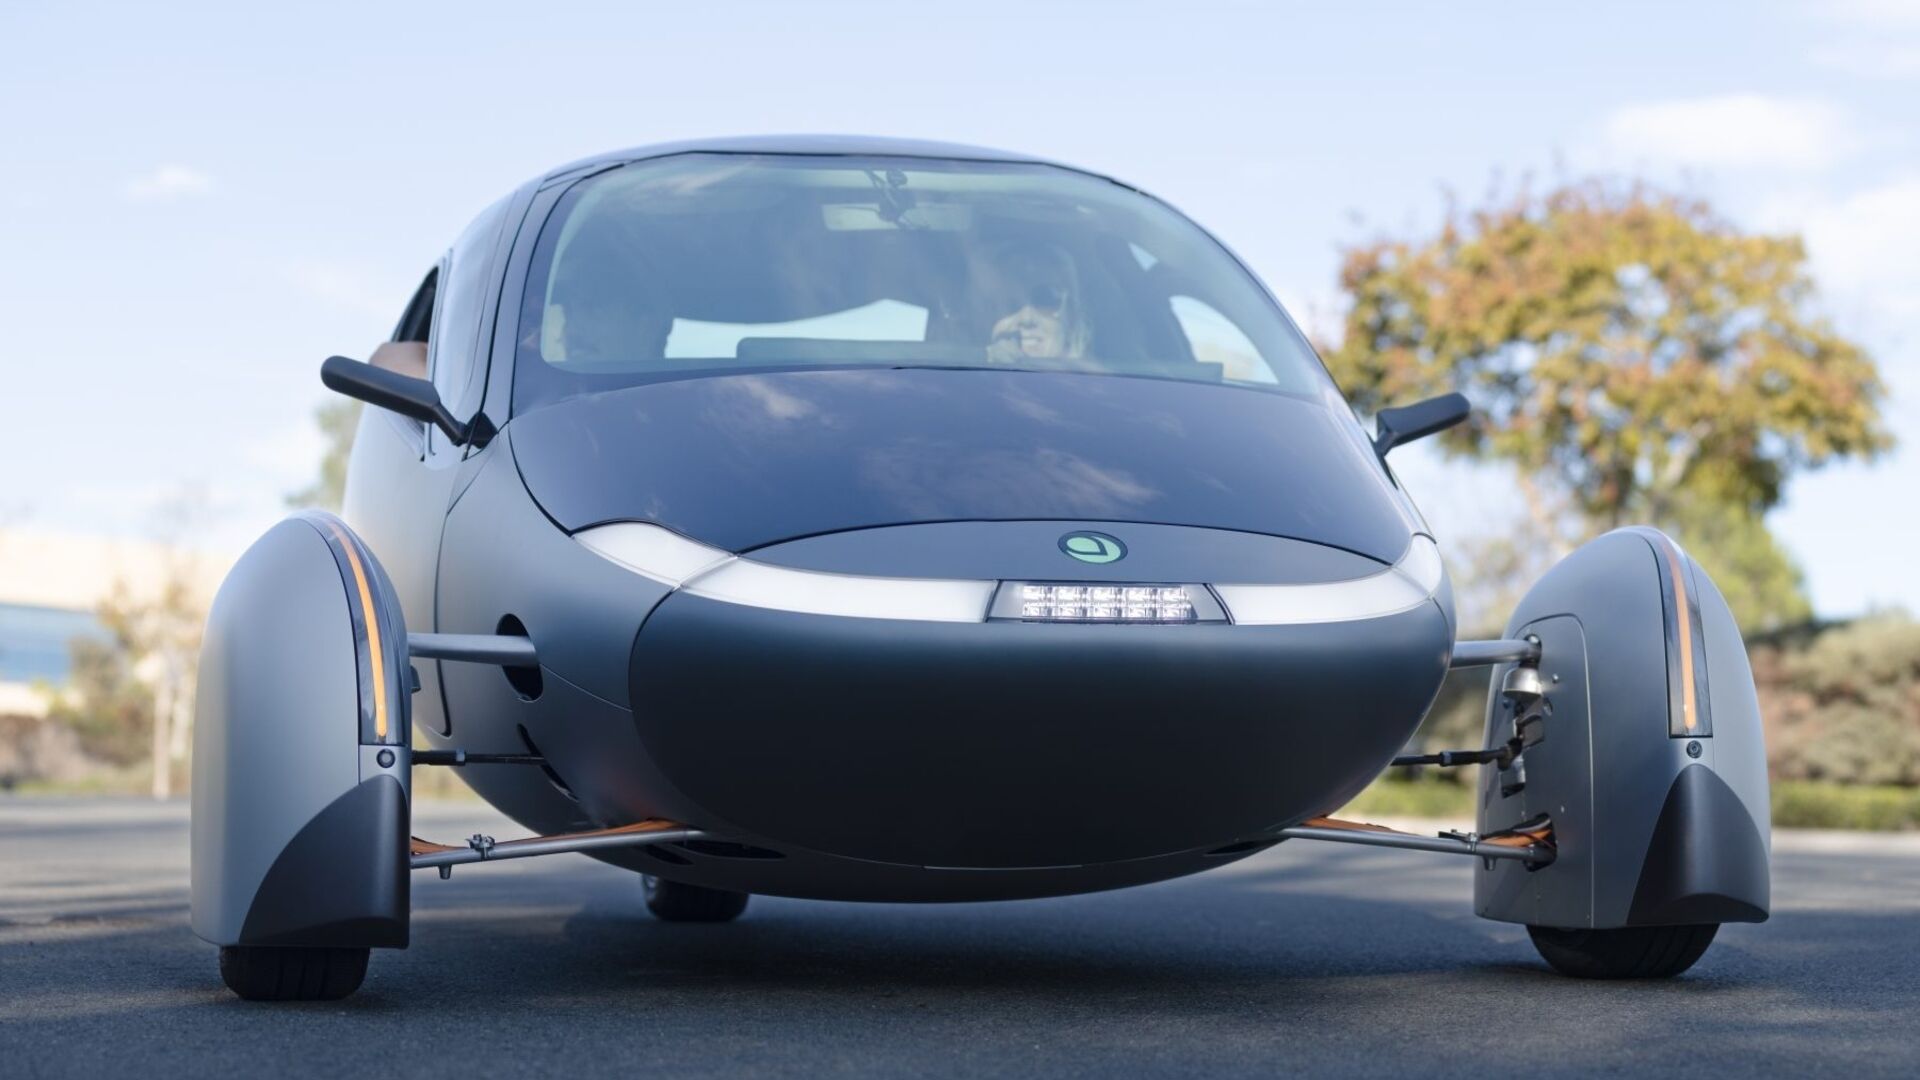 Соларен автомобил: Aptera Delta е най-устойчивият автомобил в света с пробег от 1600 км на батерия и 70 км на слънчева енергия